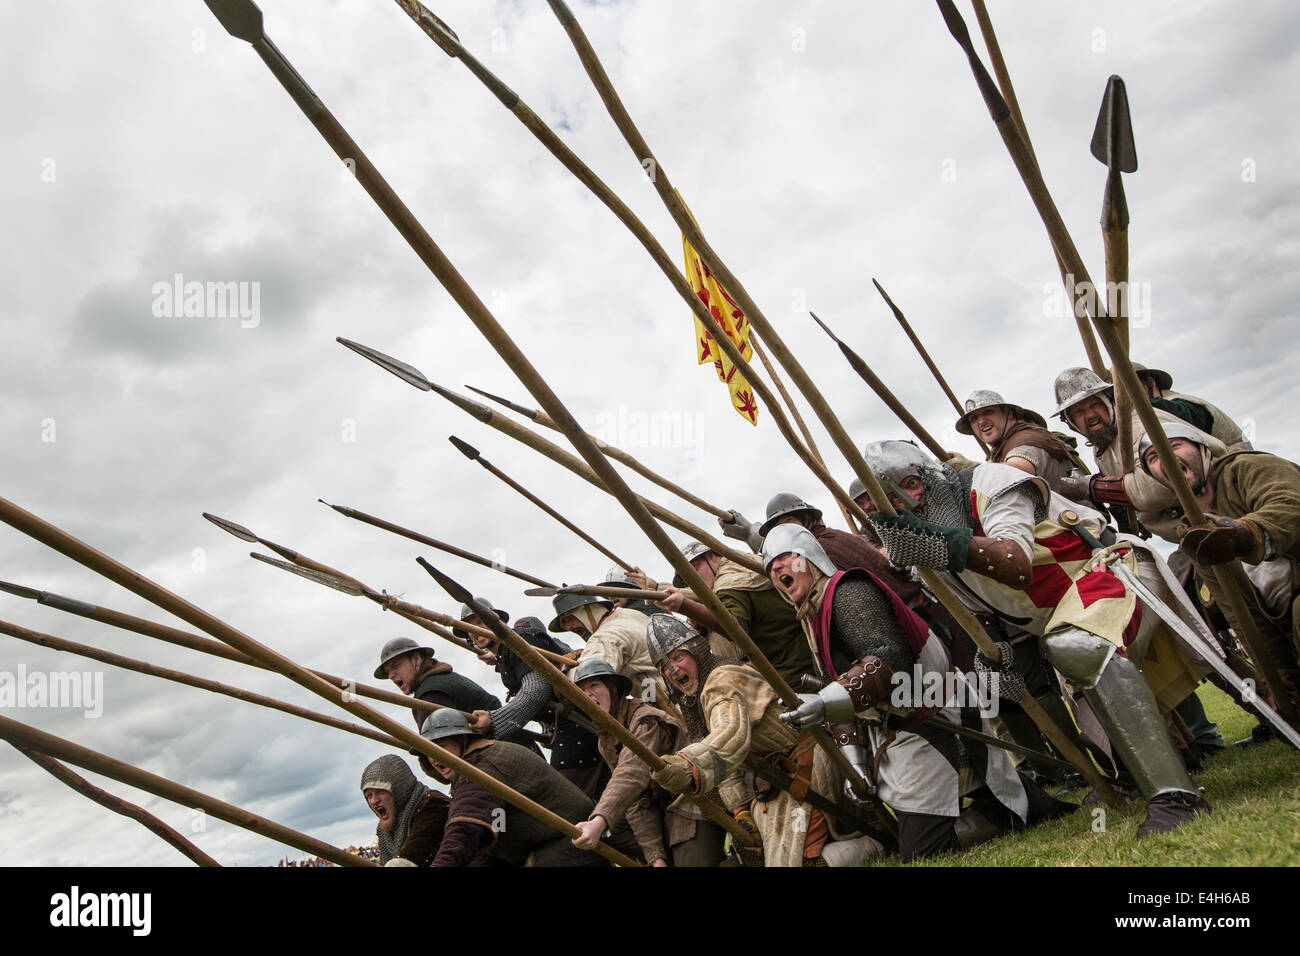 Reenactment der Schlacht von Bannockburn mit Robert The Bruce bei Bannockburn Leben 700 Jahre Gedenken an die Schlacht, Schottland. Stockfoto